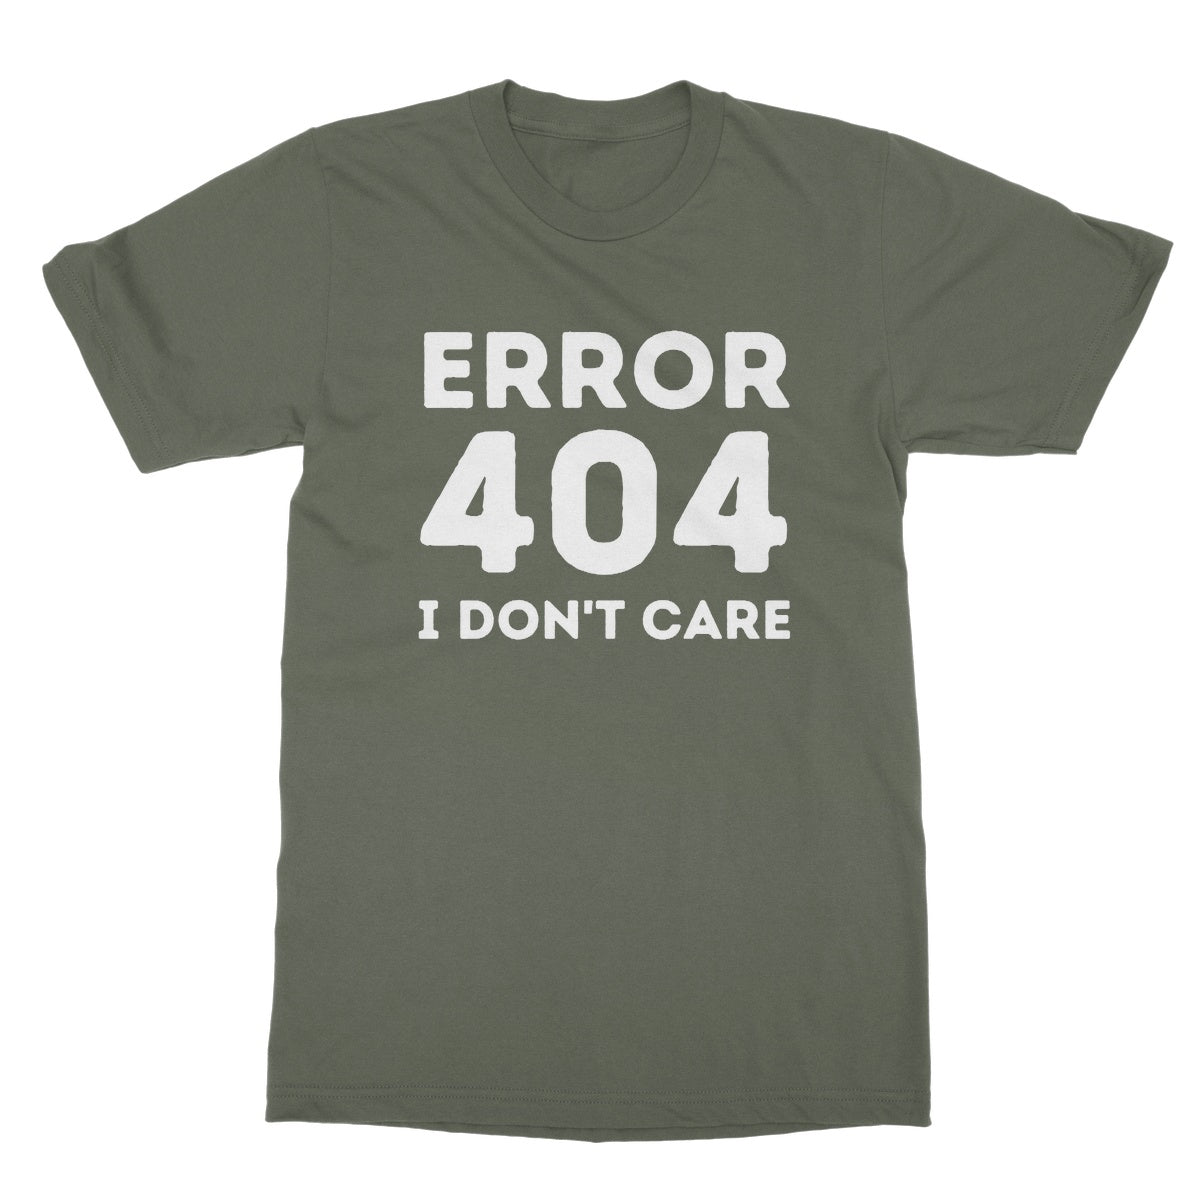 error 404 t shirt green